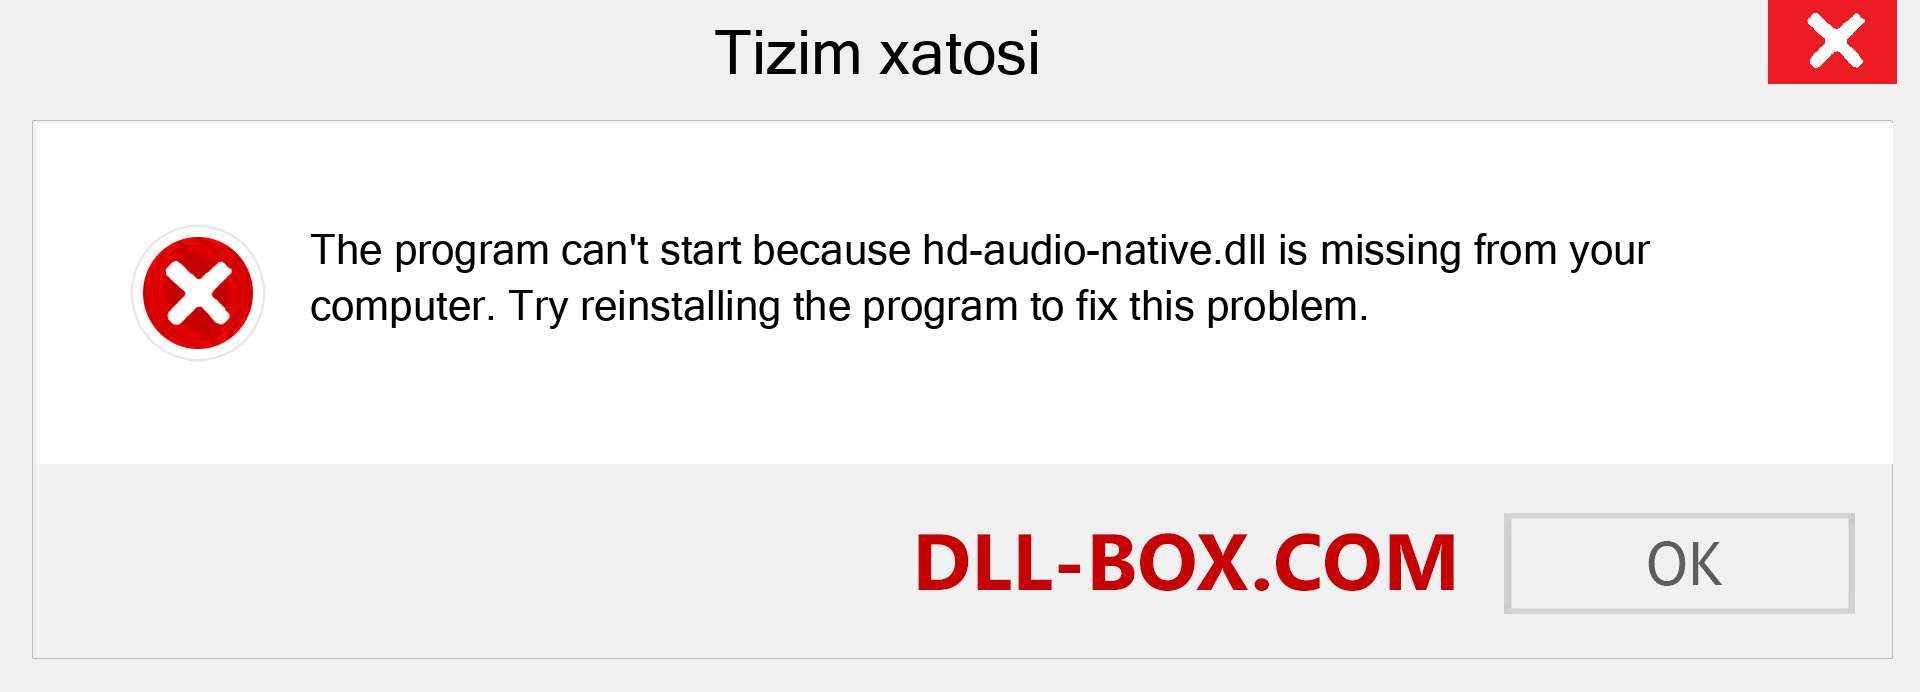 hd-audio-native.dll fayli yo'qolganmi?. Windows 7, 8, 10 uchun yuklab olish - Windowsda hd-audio-native dll etishmayotgan xatoni tuzating, rasmlar, rasmlar